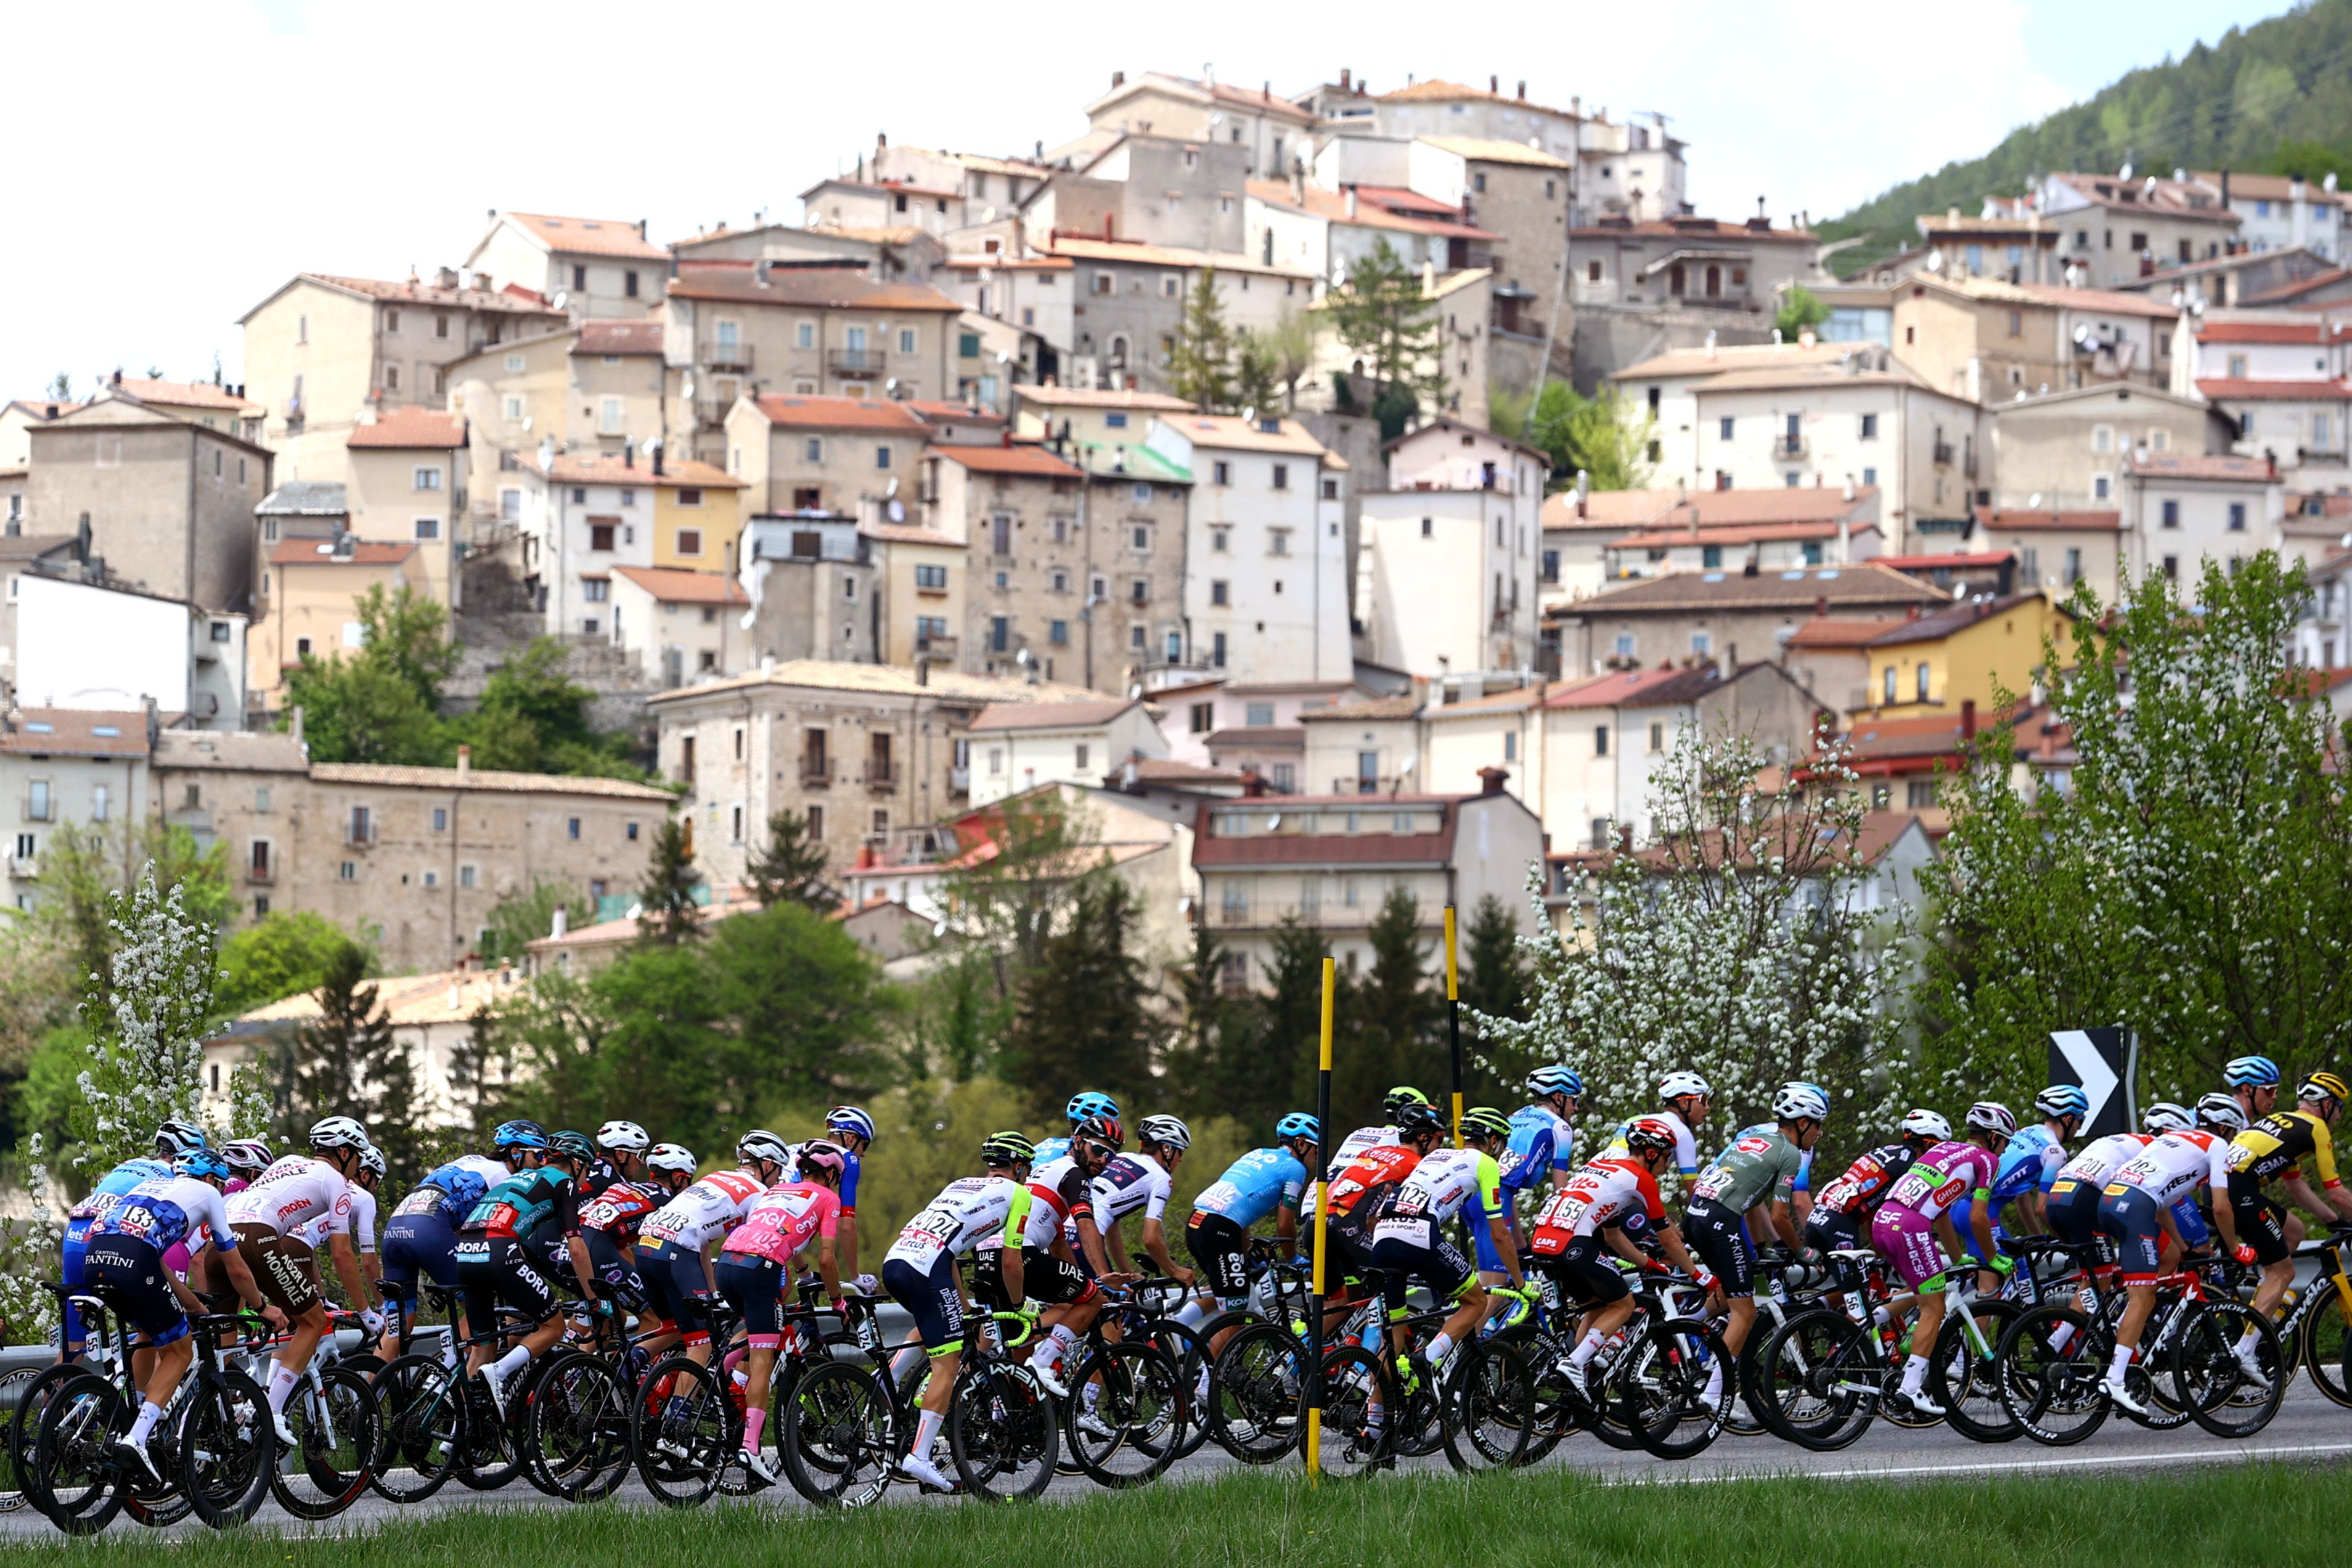 Gallery: Van der Poel feasts on Giro d'Italia Stage 1 in Hungary